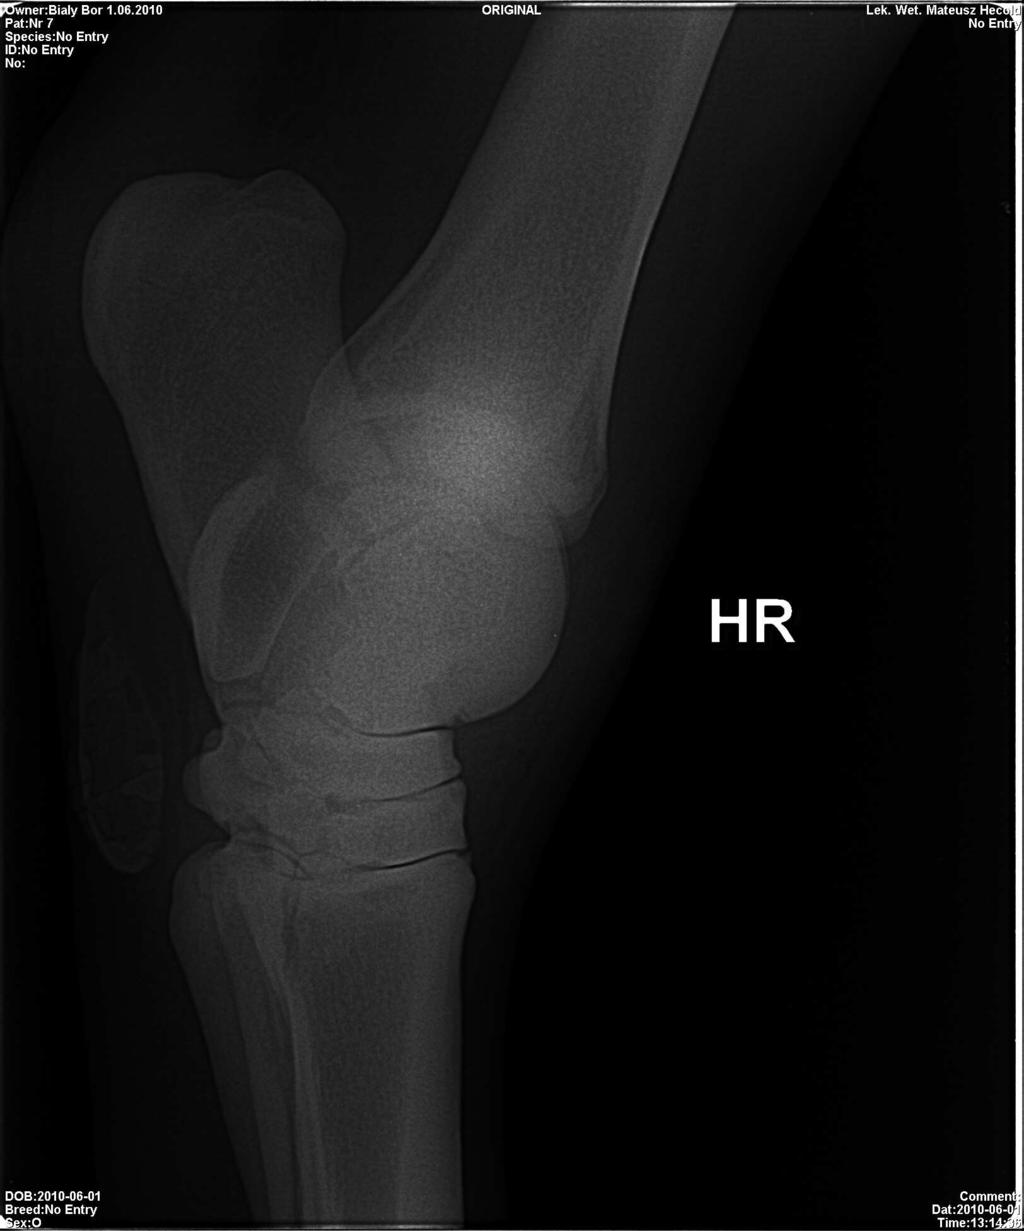 Na zdjęciu rentgenowskim powinny być widoczna dokładnie szpary stawowe, bloczki kości skokowej i grzebień pośrodkowy kości piszczelowej.